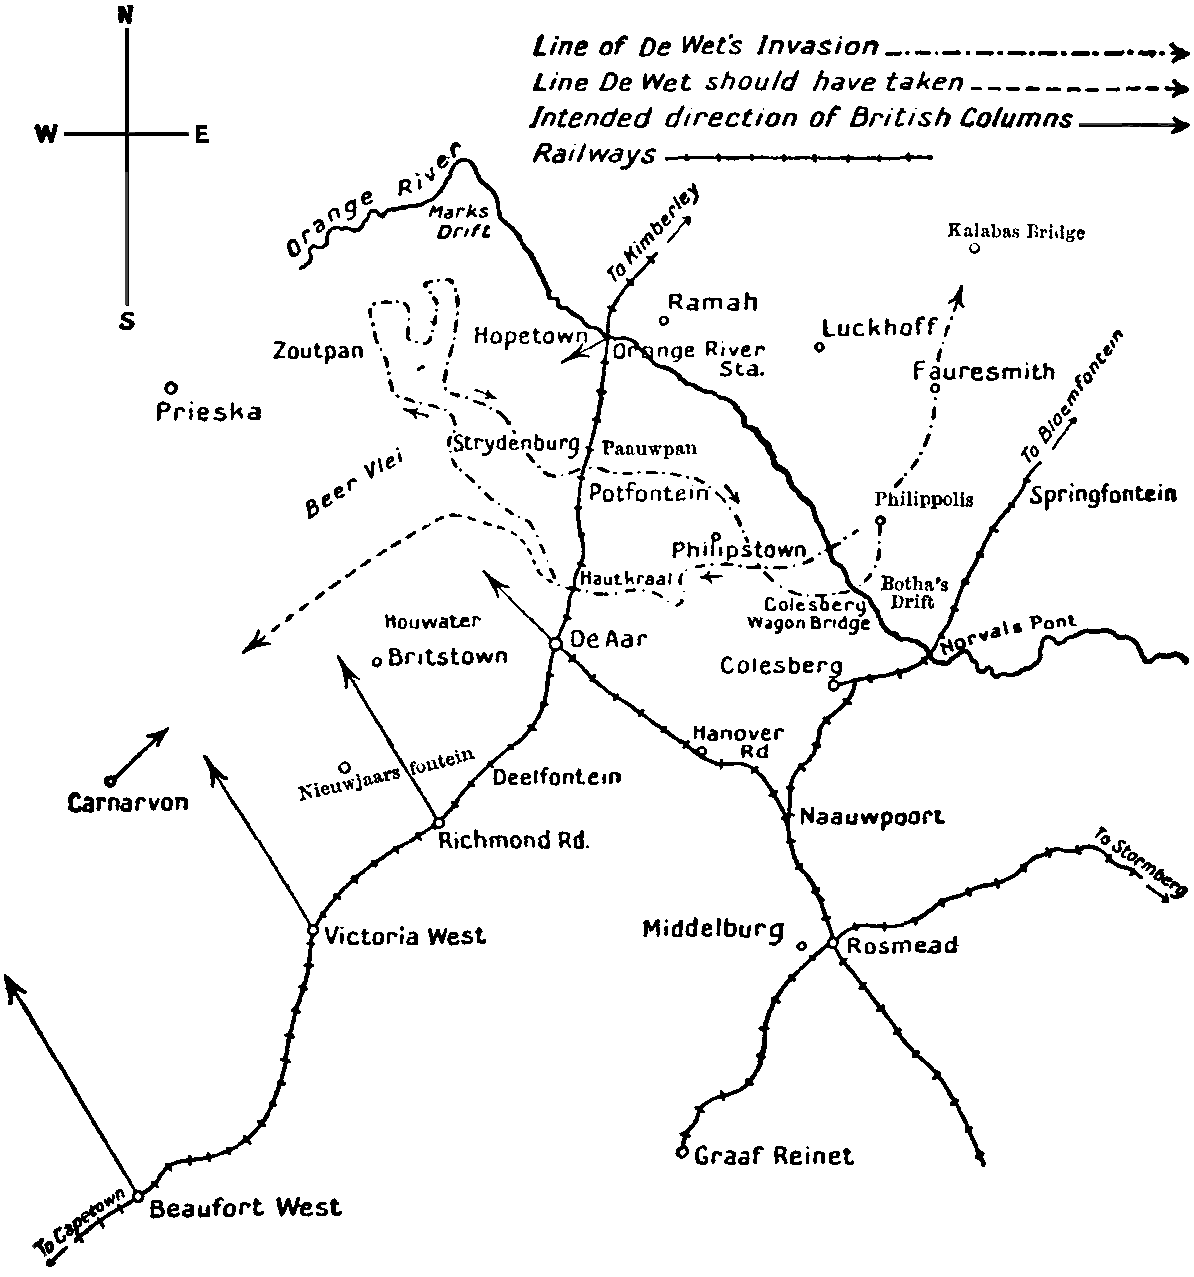 Rough Sketch Map showing De Wet's Invasion